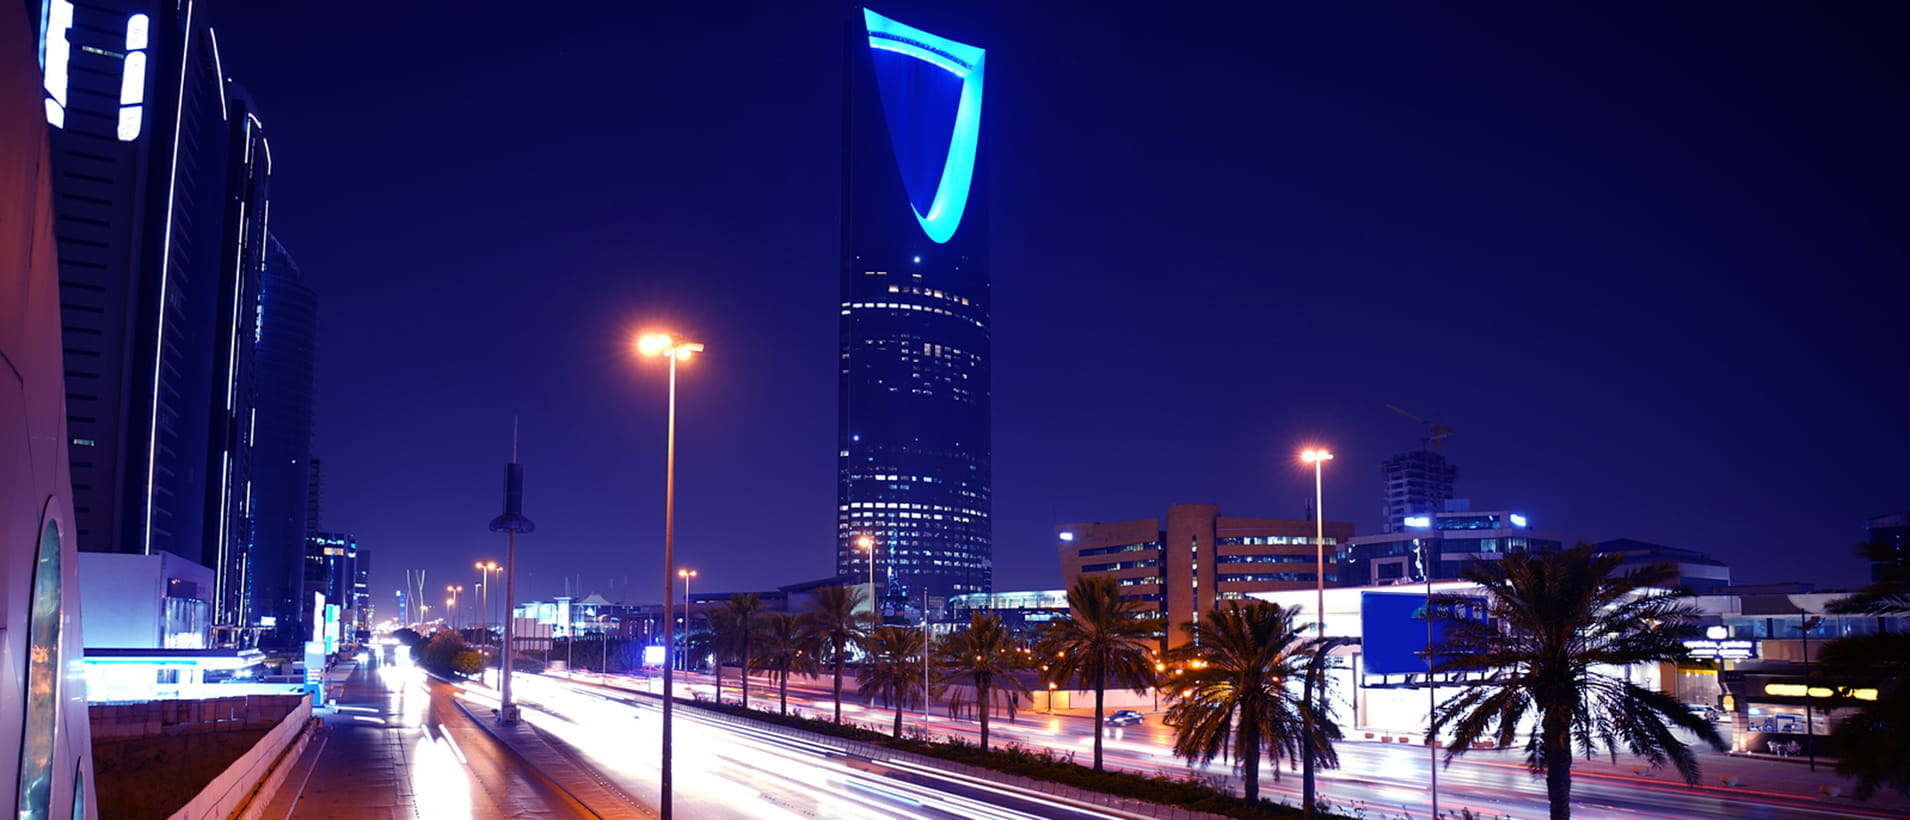 Riyadh_at_night_L_2680